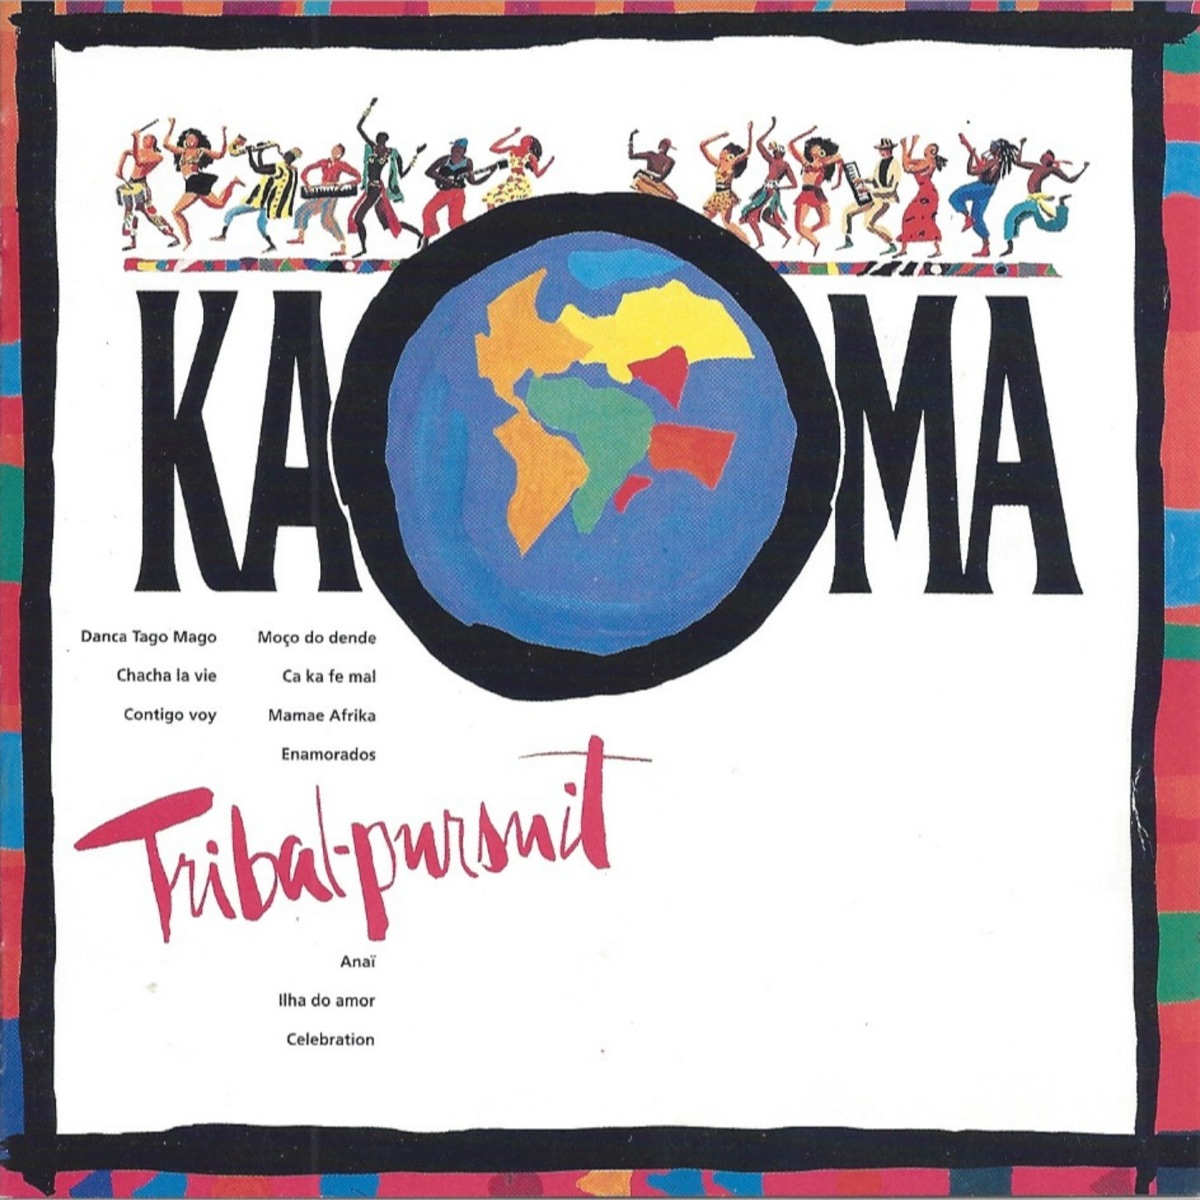 Lambada (Original Version & Remixes), Kaoma - Qobuz